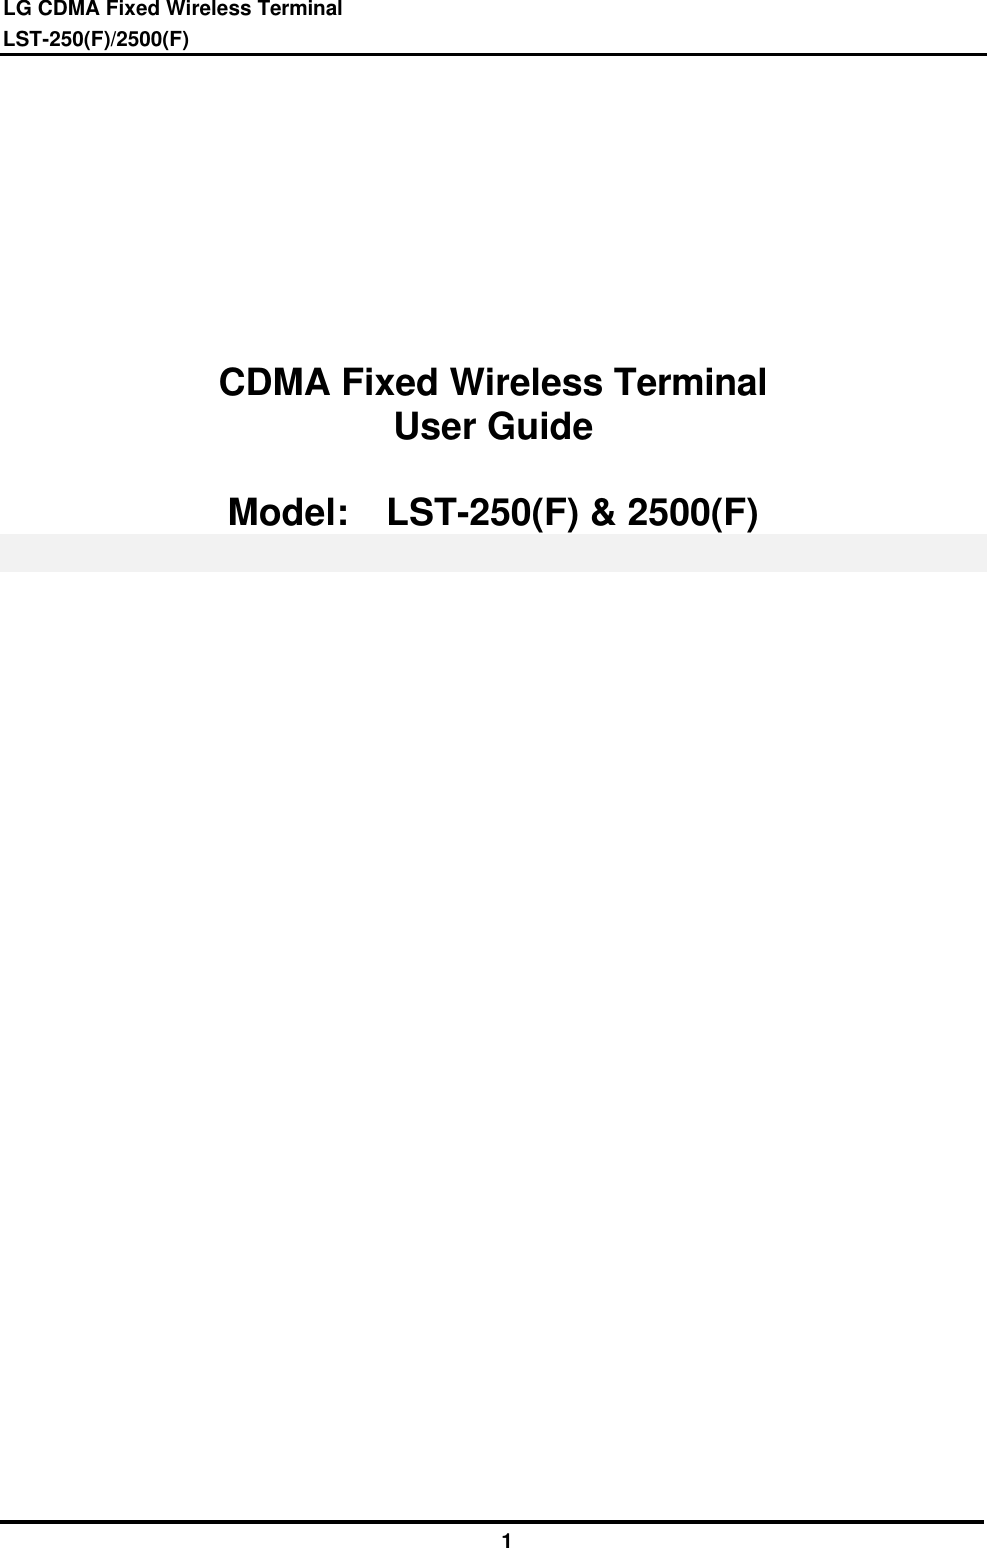 LG CDMA Fixed Wireless Terminal LST-250(F)/2500(F)              1         CDMA Fixed Wireless Terminal User Guide  Model:  LST-250(F) &amp; 2500(F) 